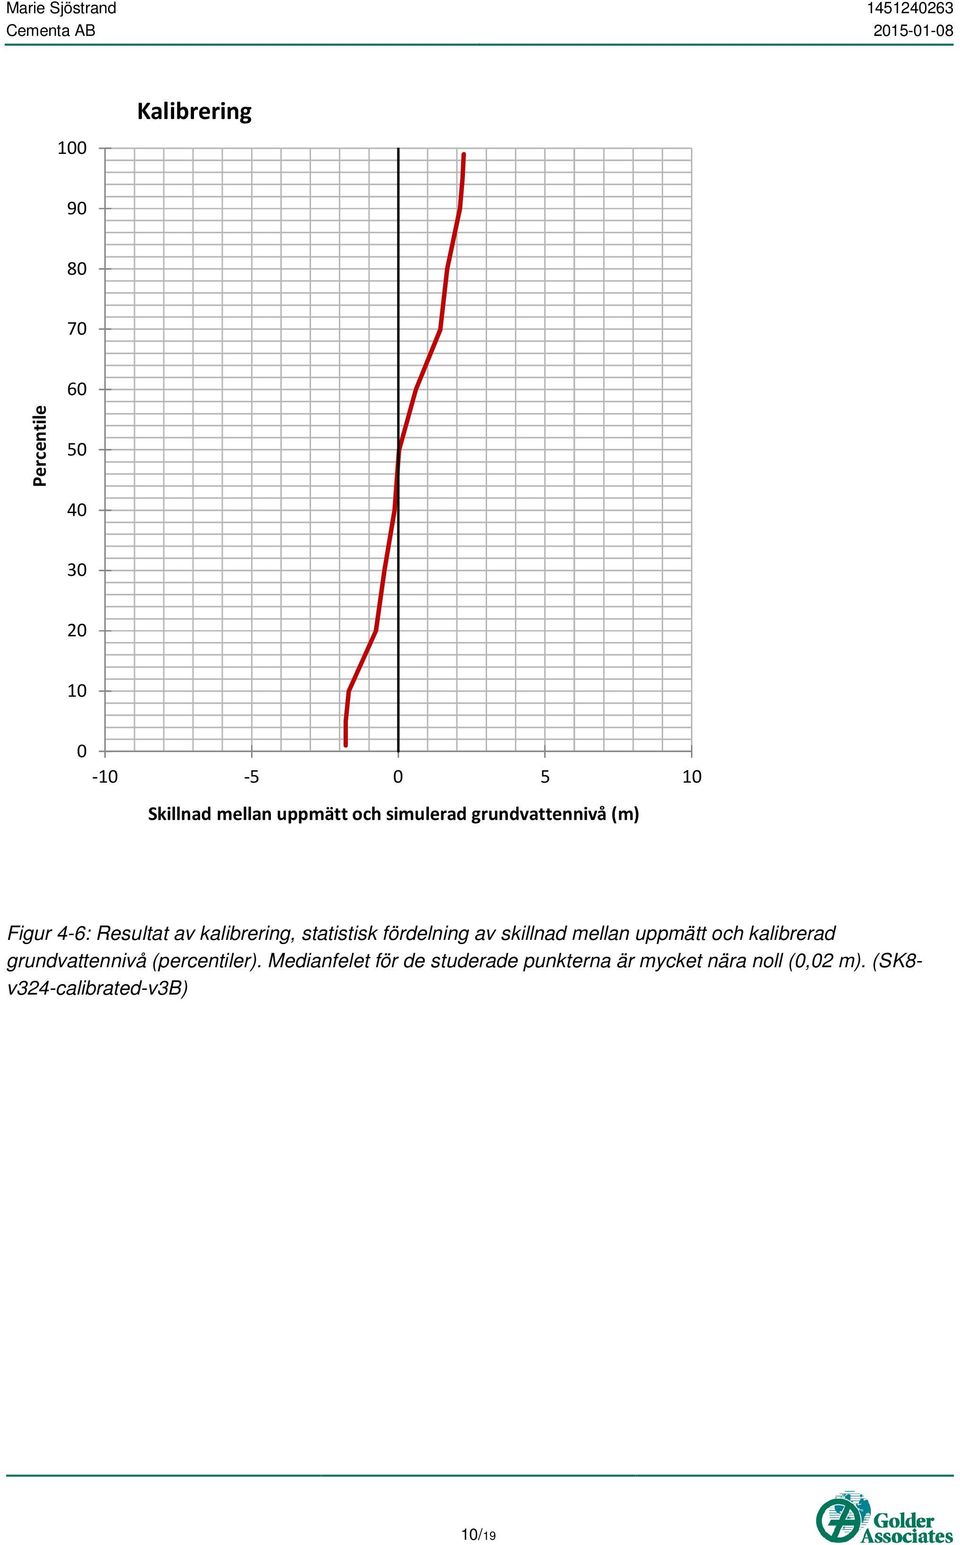 fördelning av skillnad mellan uppmätt och kalibrerad grundvattennivå (percentiler).